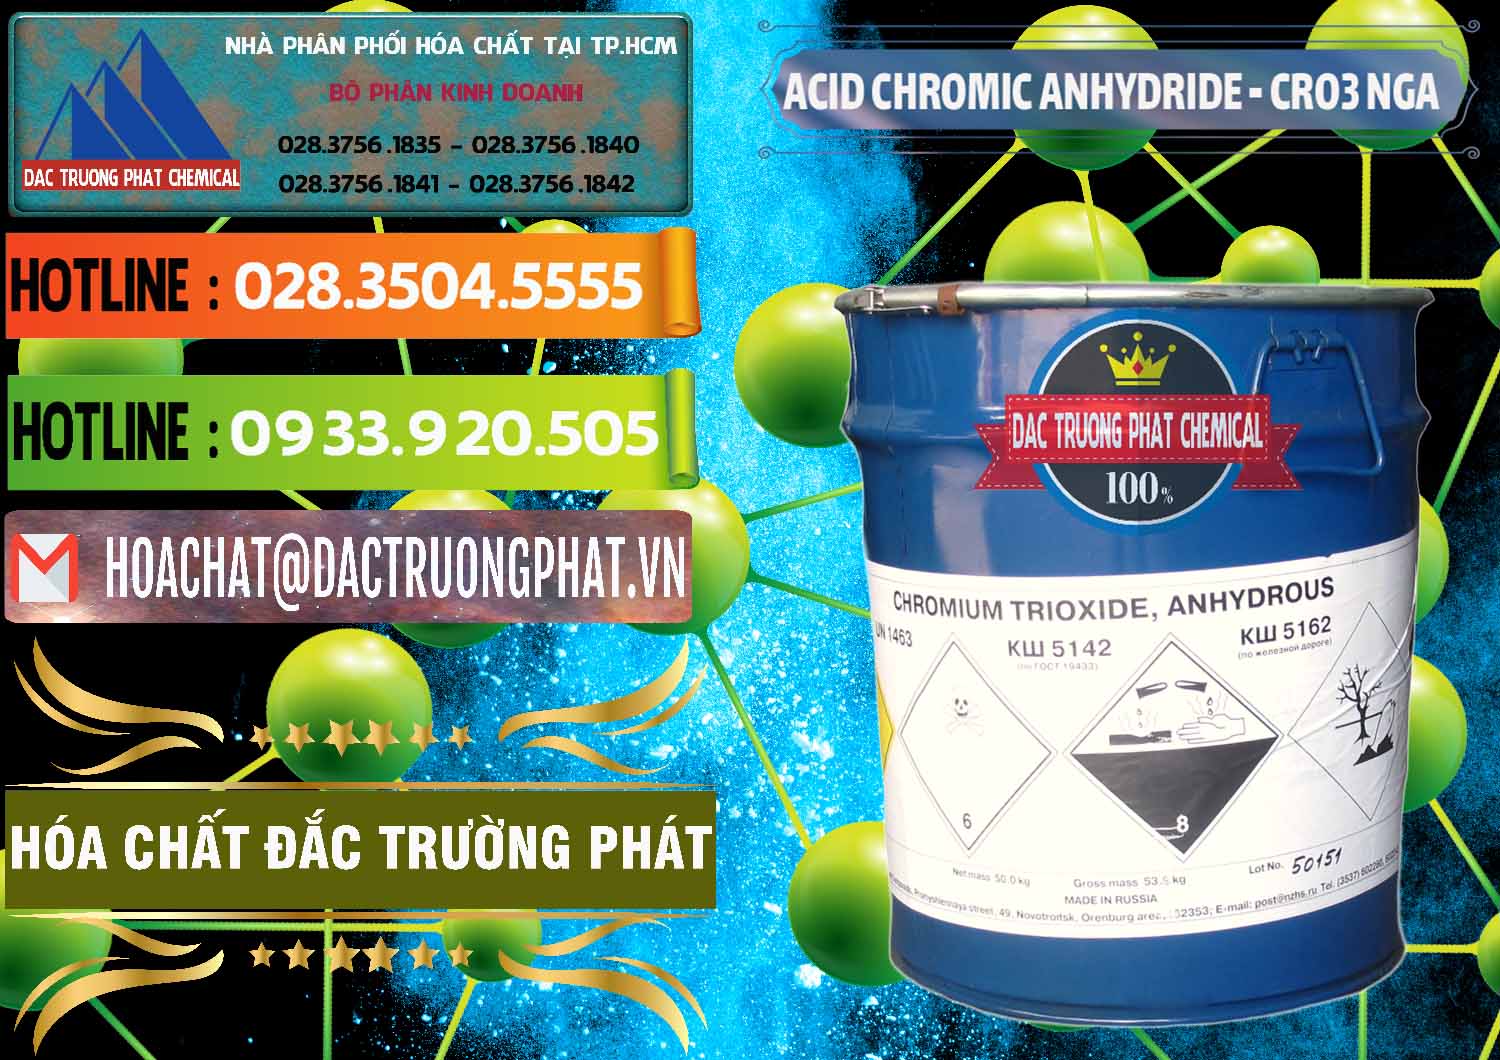 Công ty chuyên bán ( cung ứng ) Acid Chromic Anhydride - Cromic CRO3 Nga Russia - 0006 - Công ty cung ứng - phân phối hóa chất tại TP.HCM - cungcaphoachat.com.vn